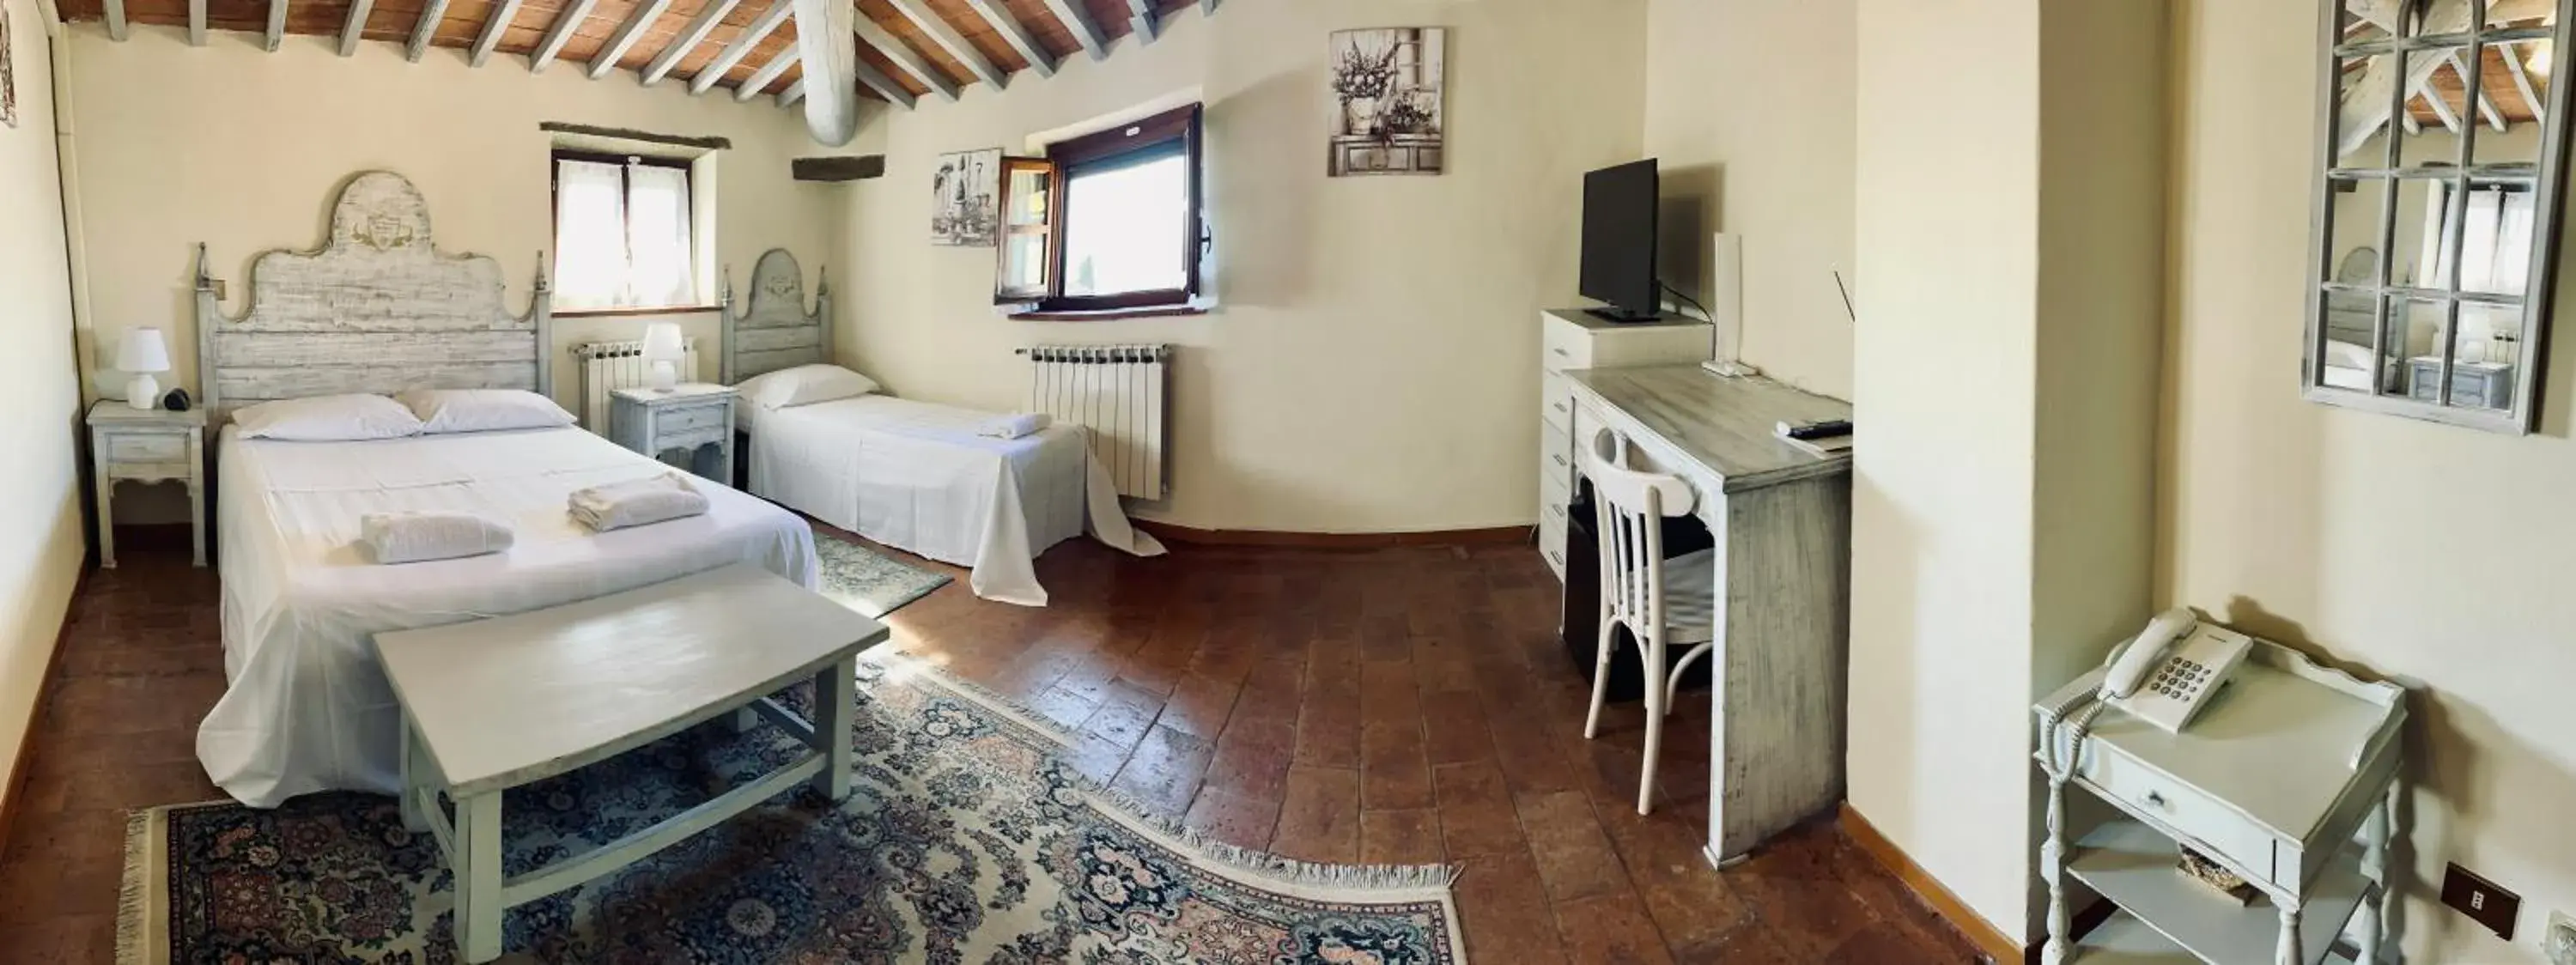 Bedroom in Villa Schiatti